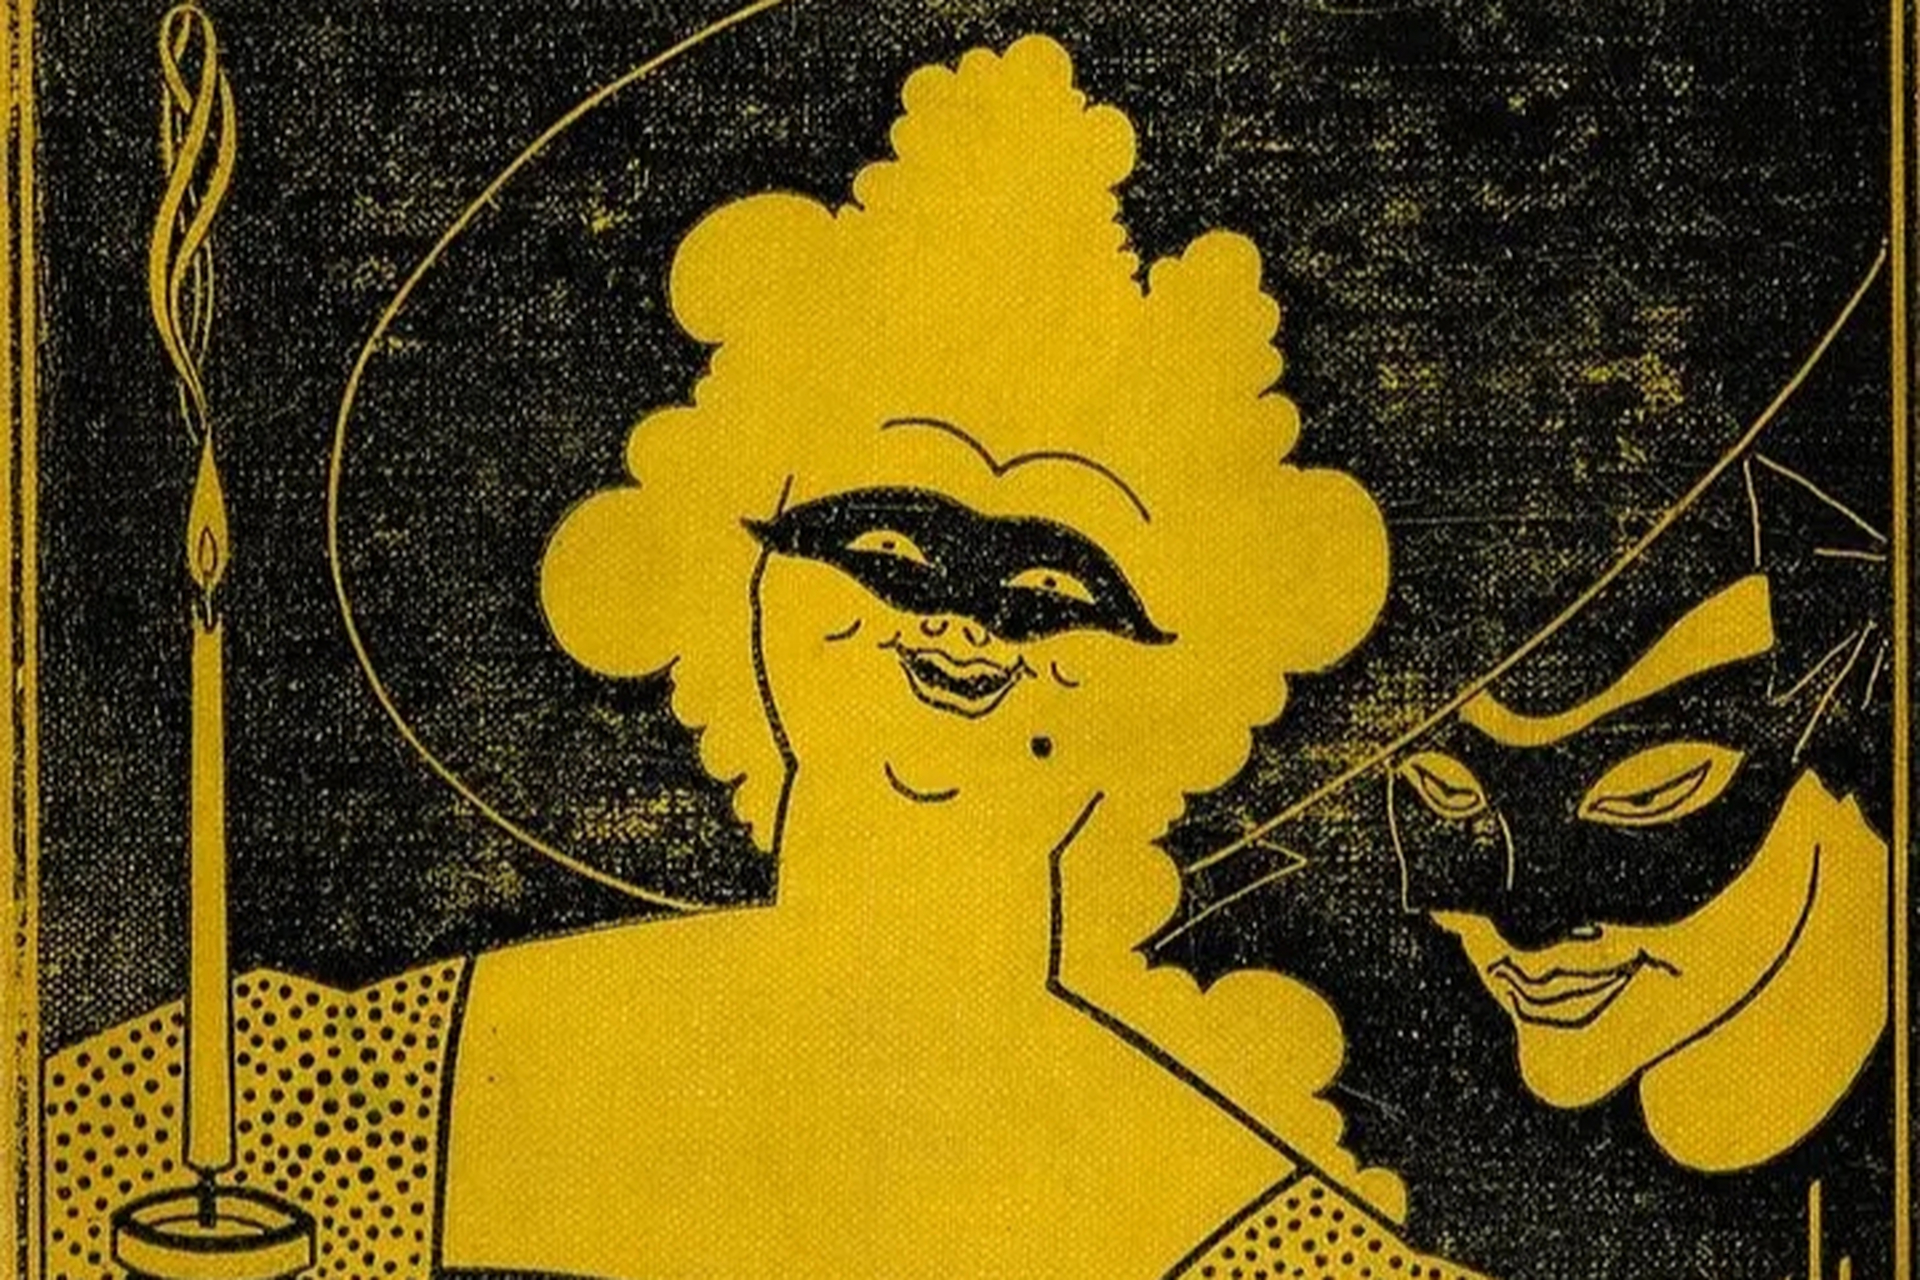 奥伯利·比亚兹莱是一位英国颓废主义插画艺术家,其作品具有前卫,唯美